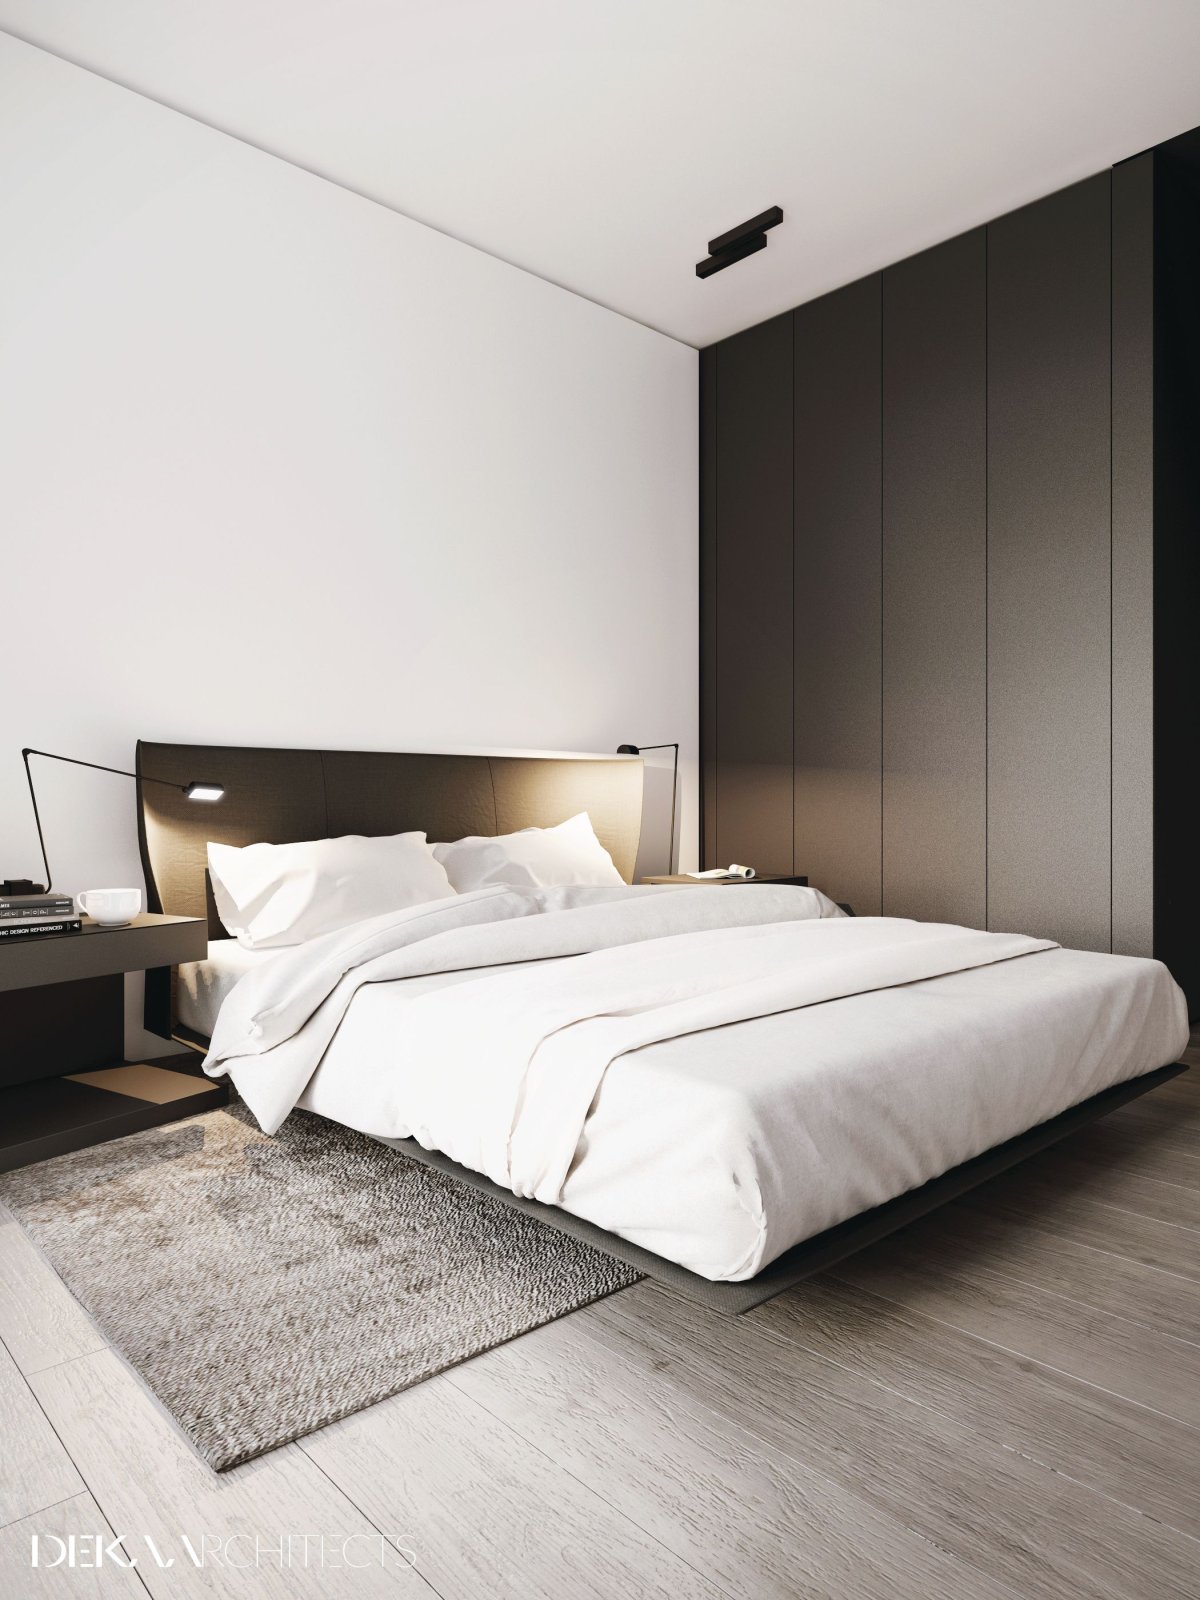 Кровать двуспальная минимализм